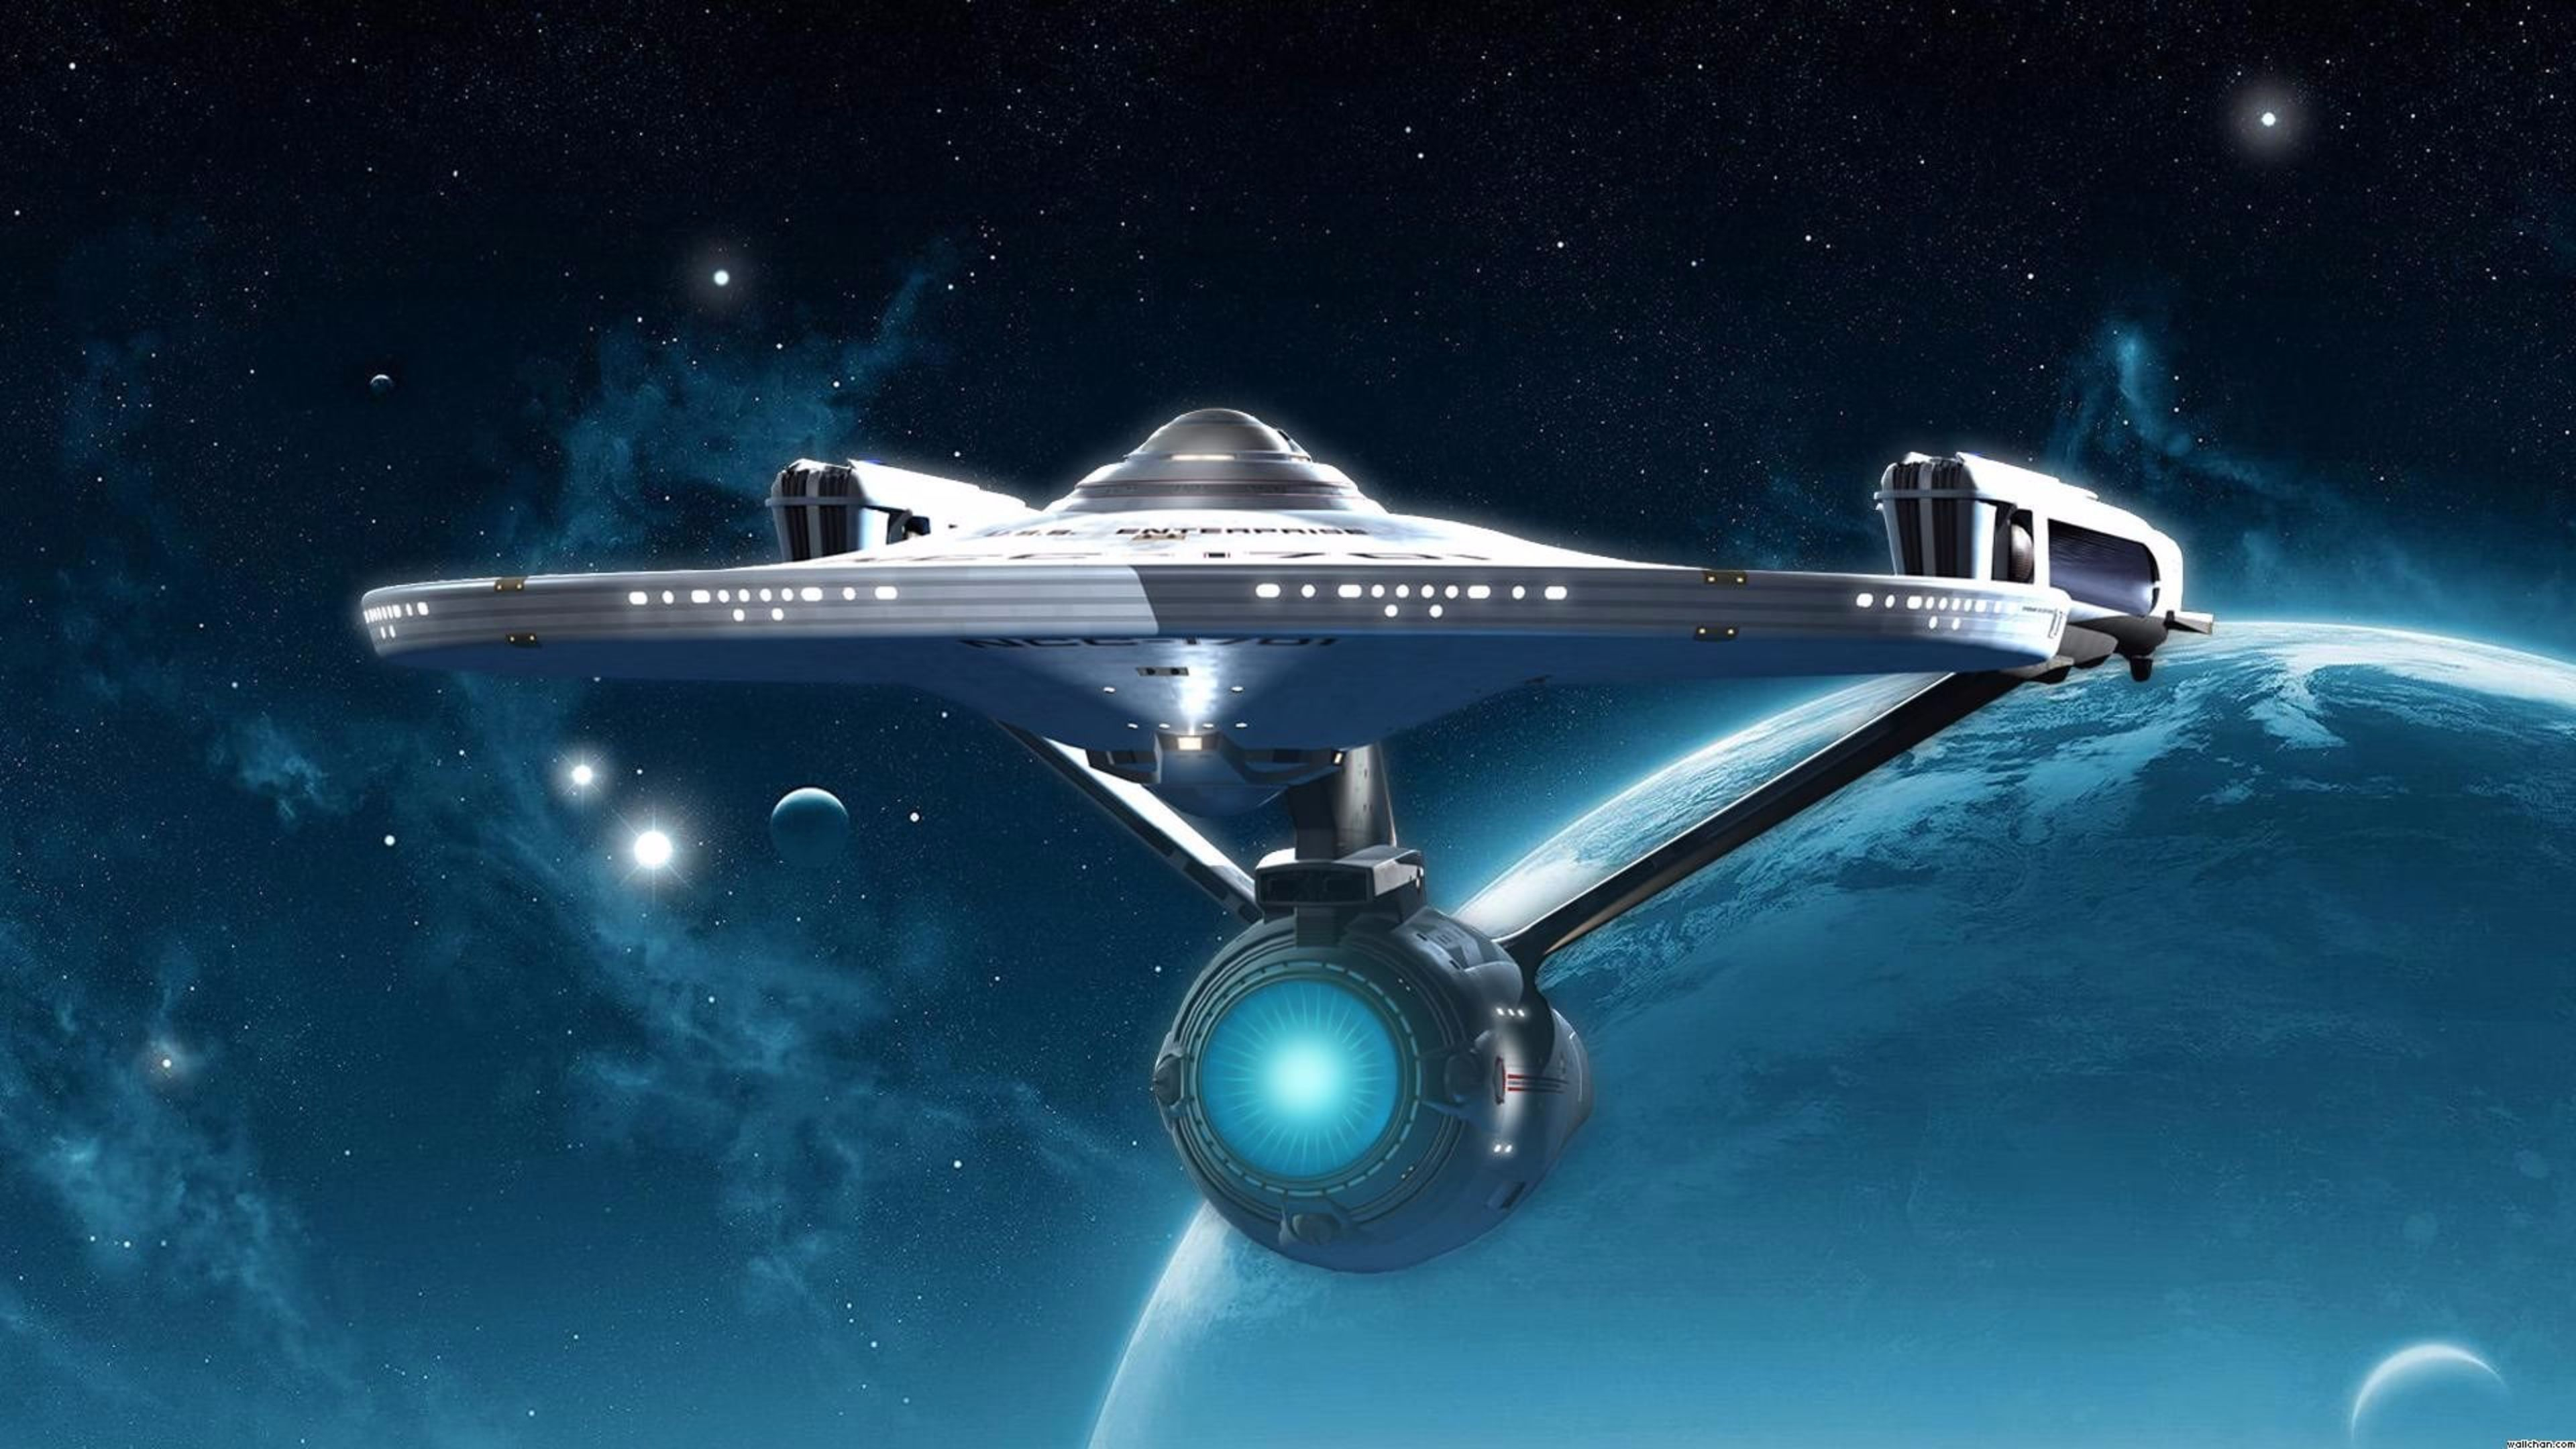 3840x2160 Star Trek Wallpaper 4k | Wallpaper star trek, Star trek beyond, Star trek enterprise